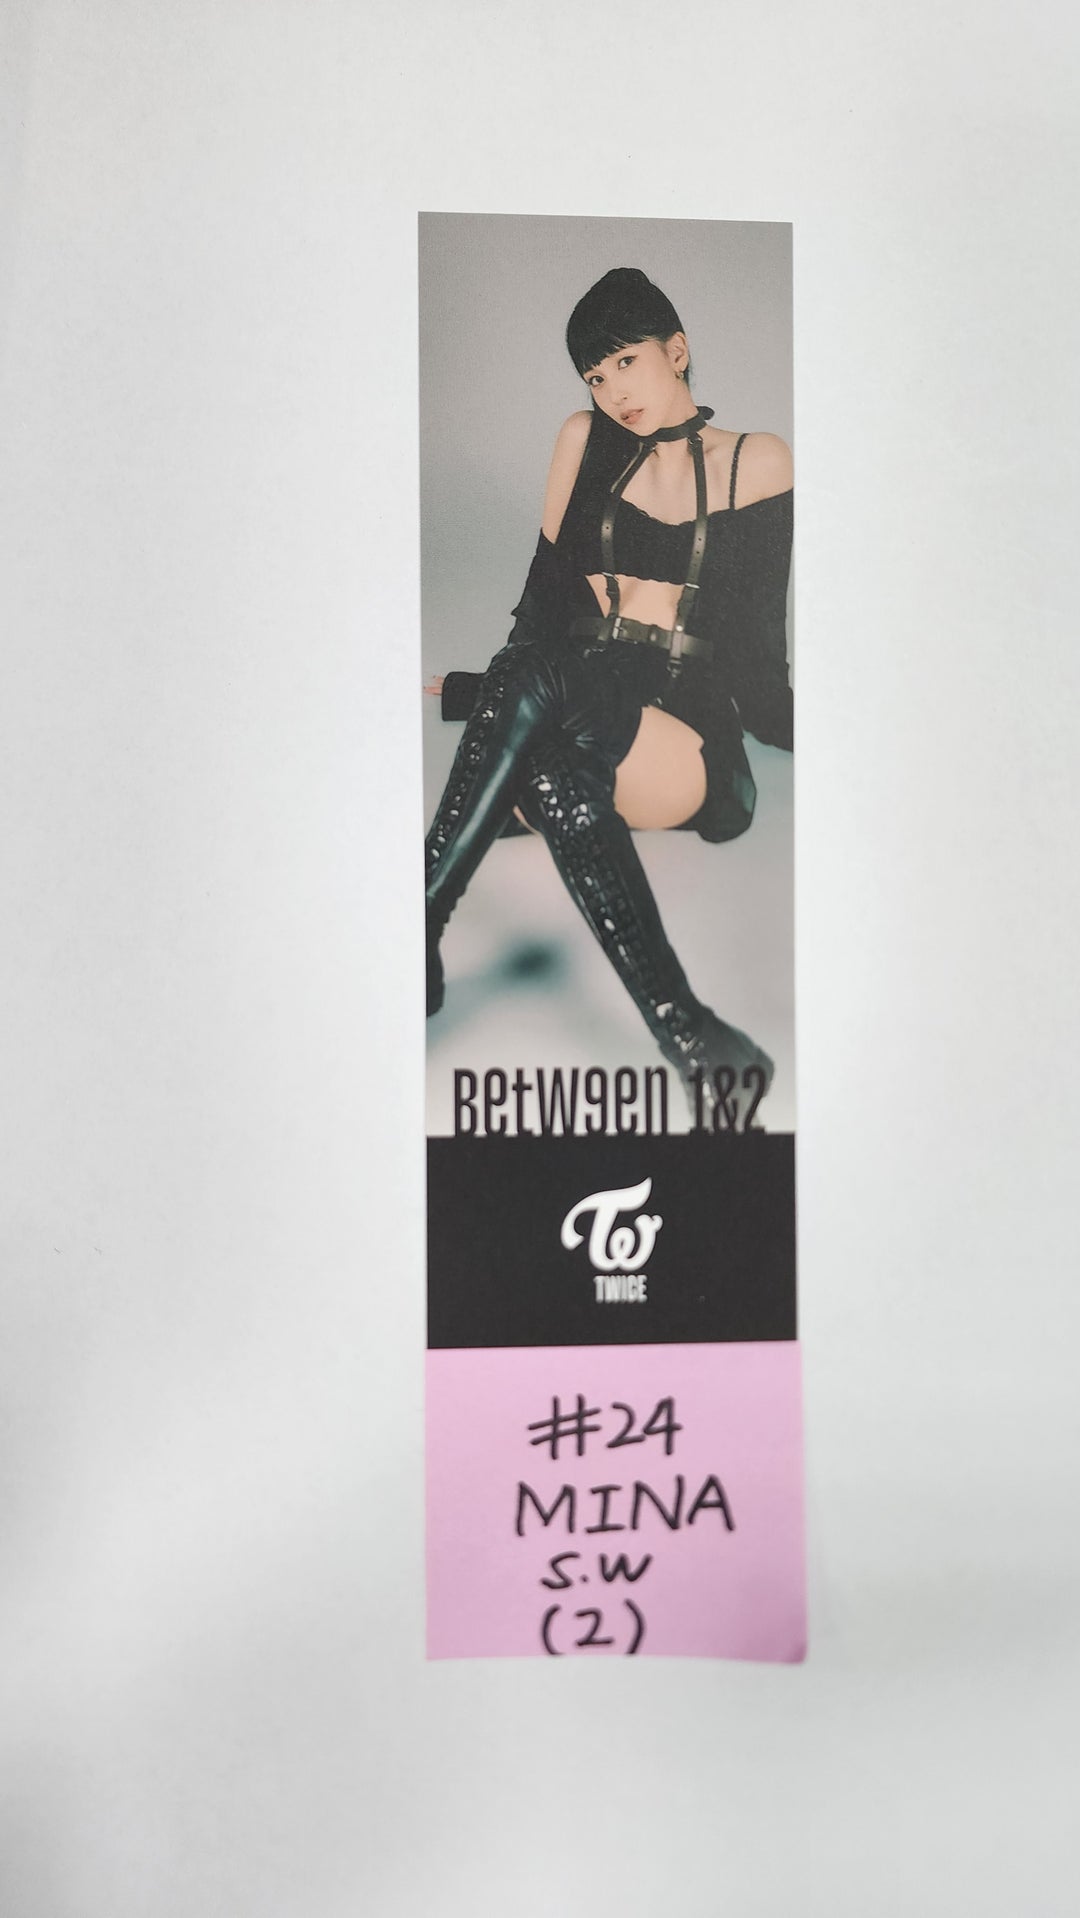 Twice "BETWEEN 1&amp;2" 11th Mini Album - Soundwave 抽選イベント PVC フォトカード、フォトブックマーク